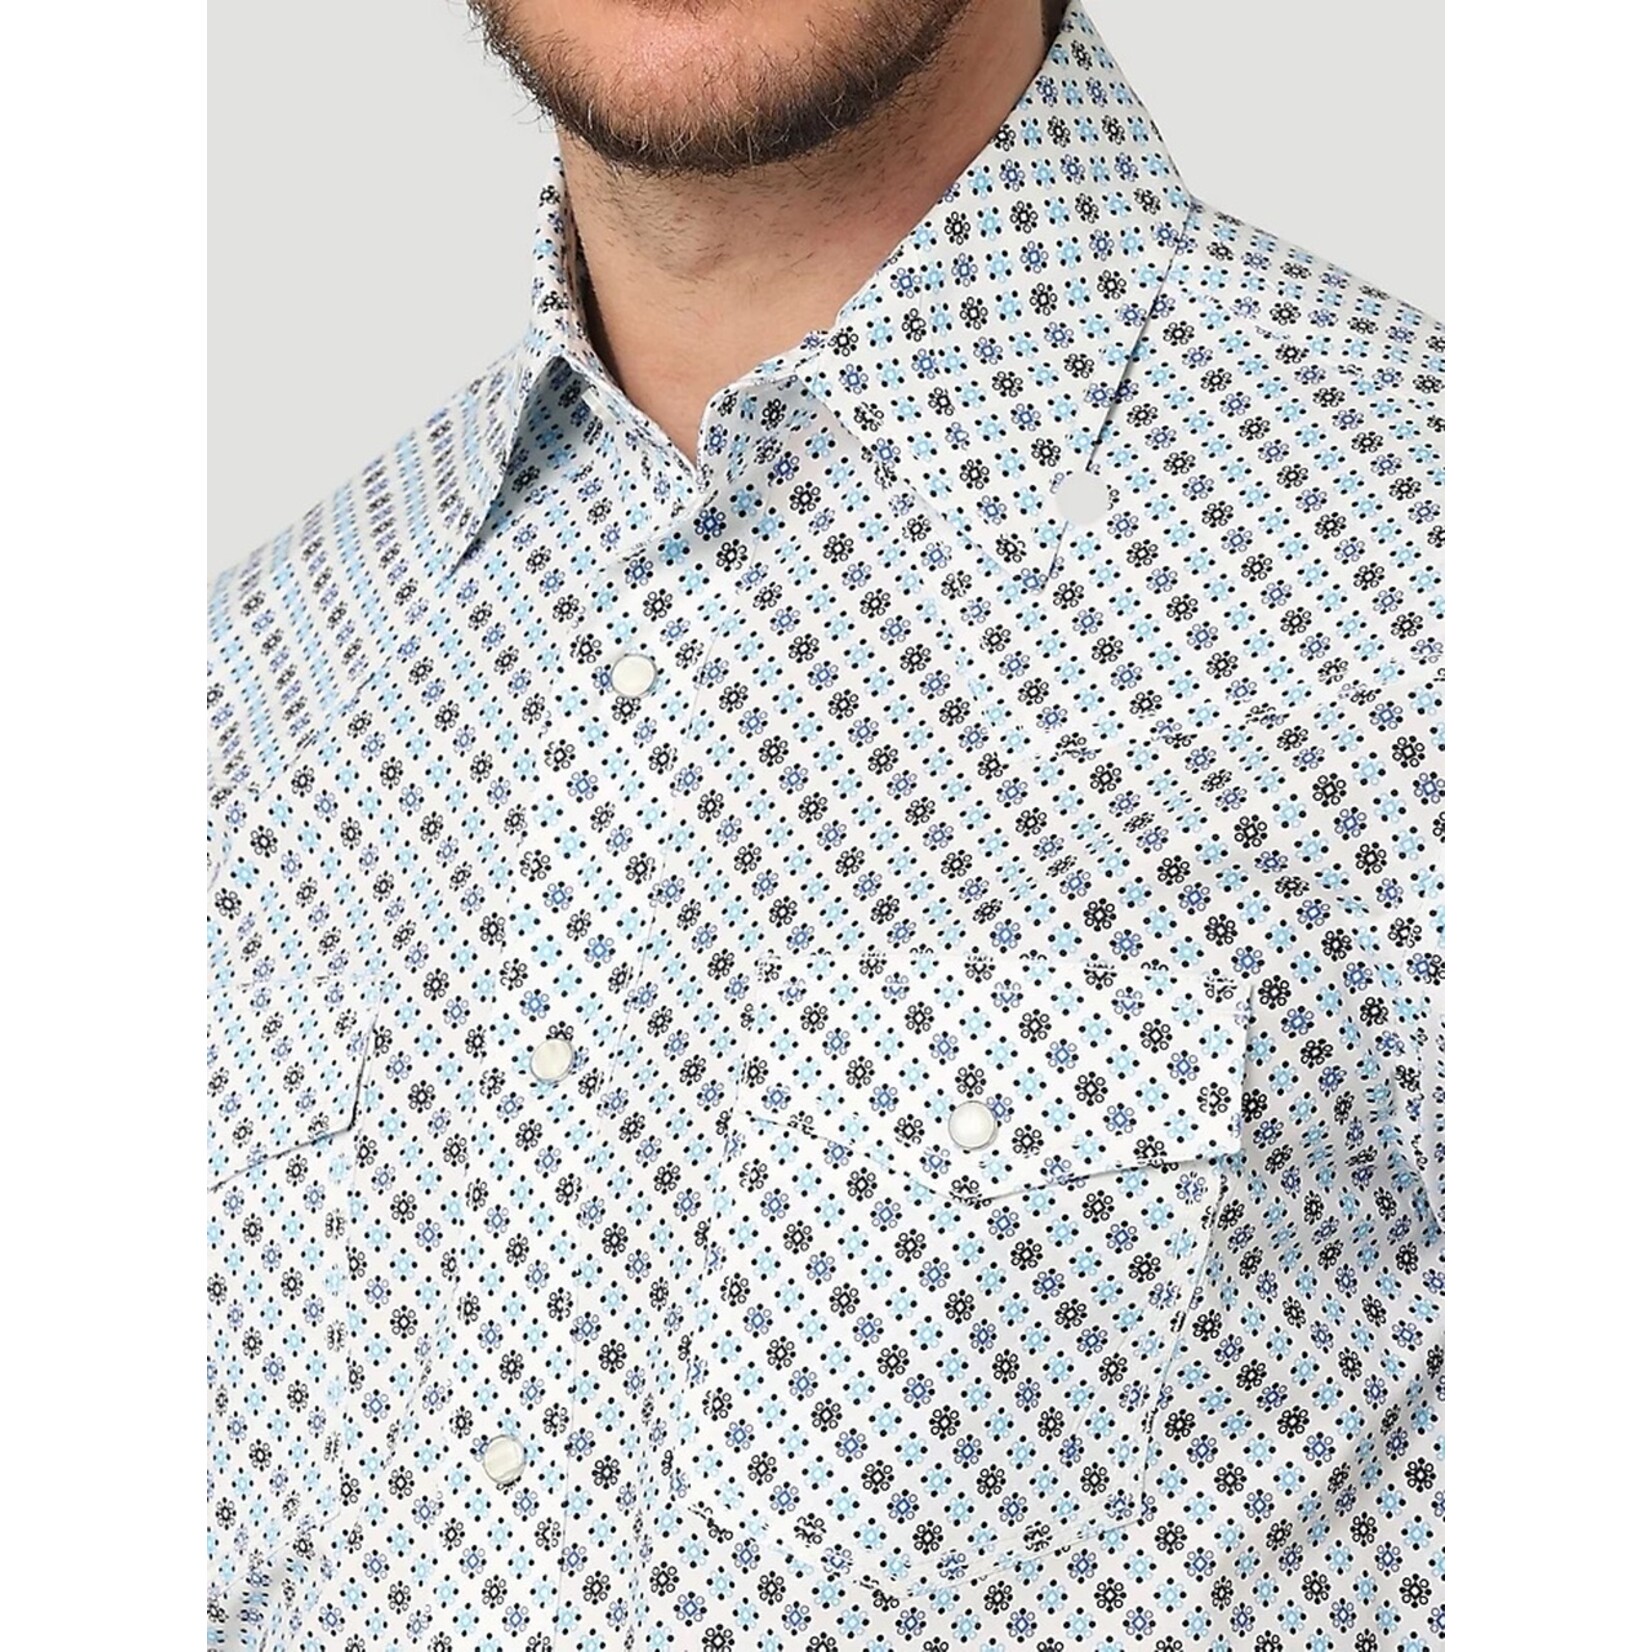 Wrangler Wrangler - Men's 20X AC Short Sleeve Shirt - 112314978